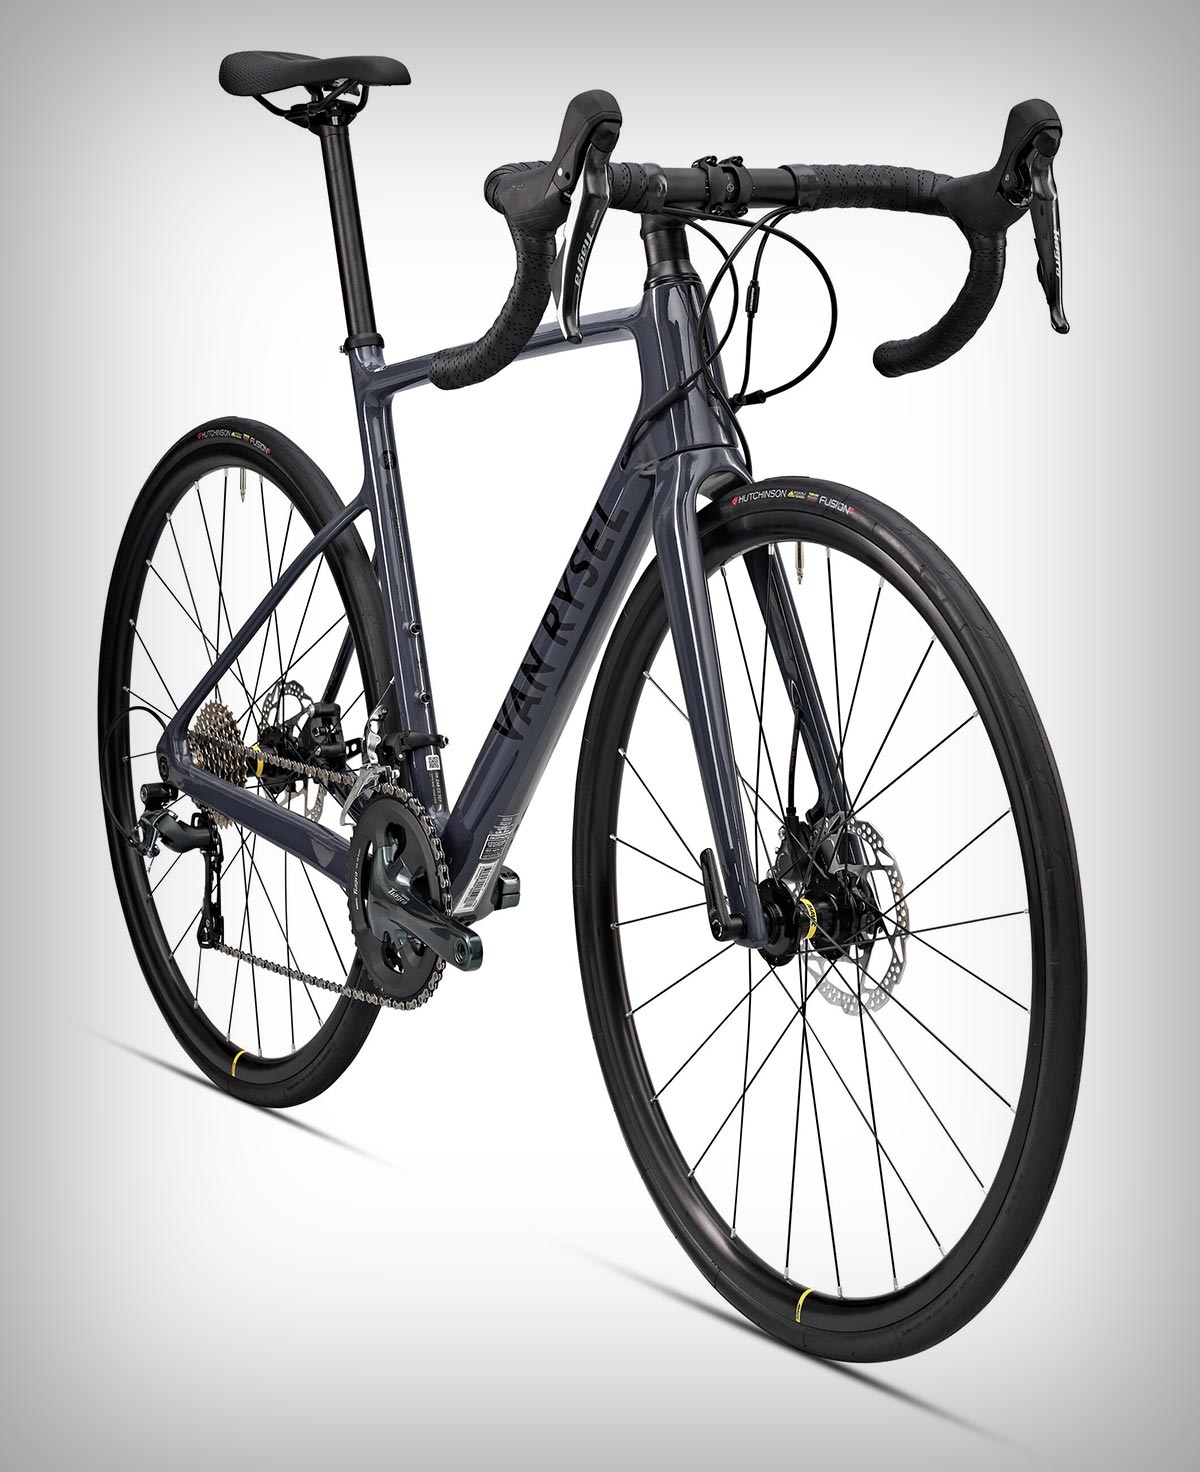 Van Rysel NCR CF Tiagra, una bici de carretera con cuadro de carbono y frenos hidráulicos con un precio sin competencia